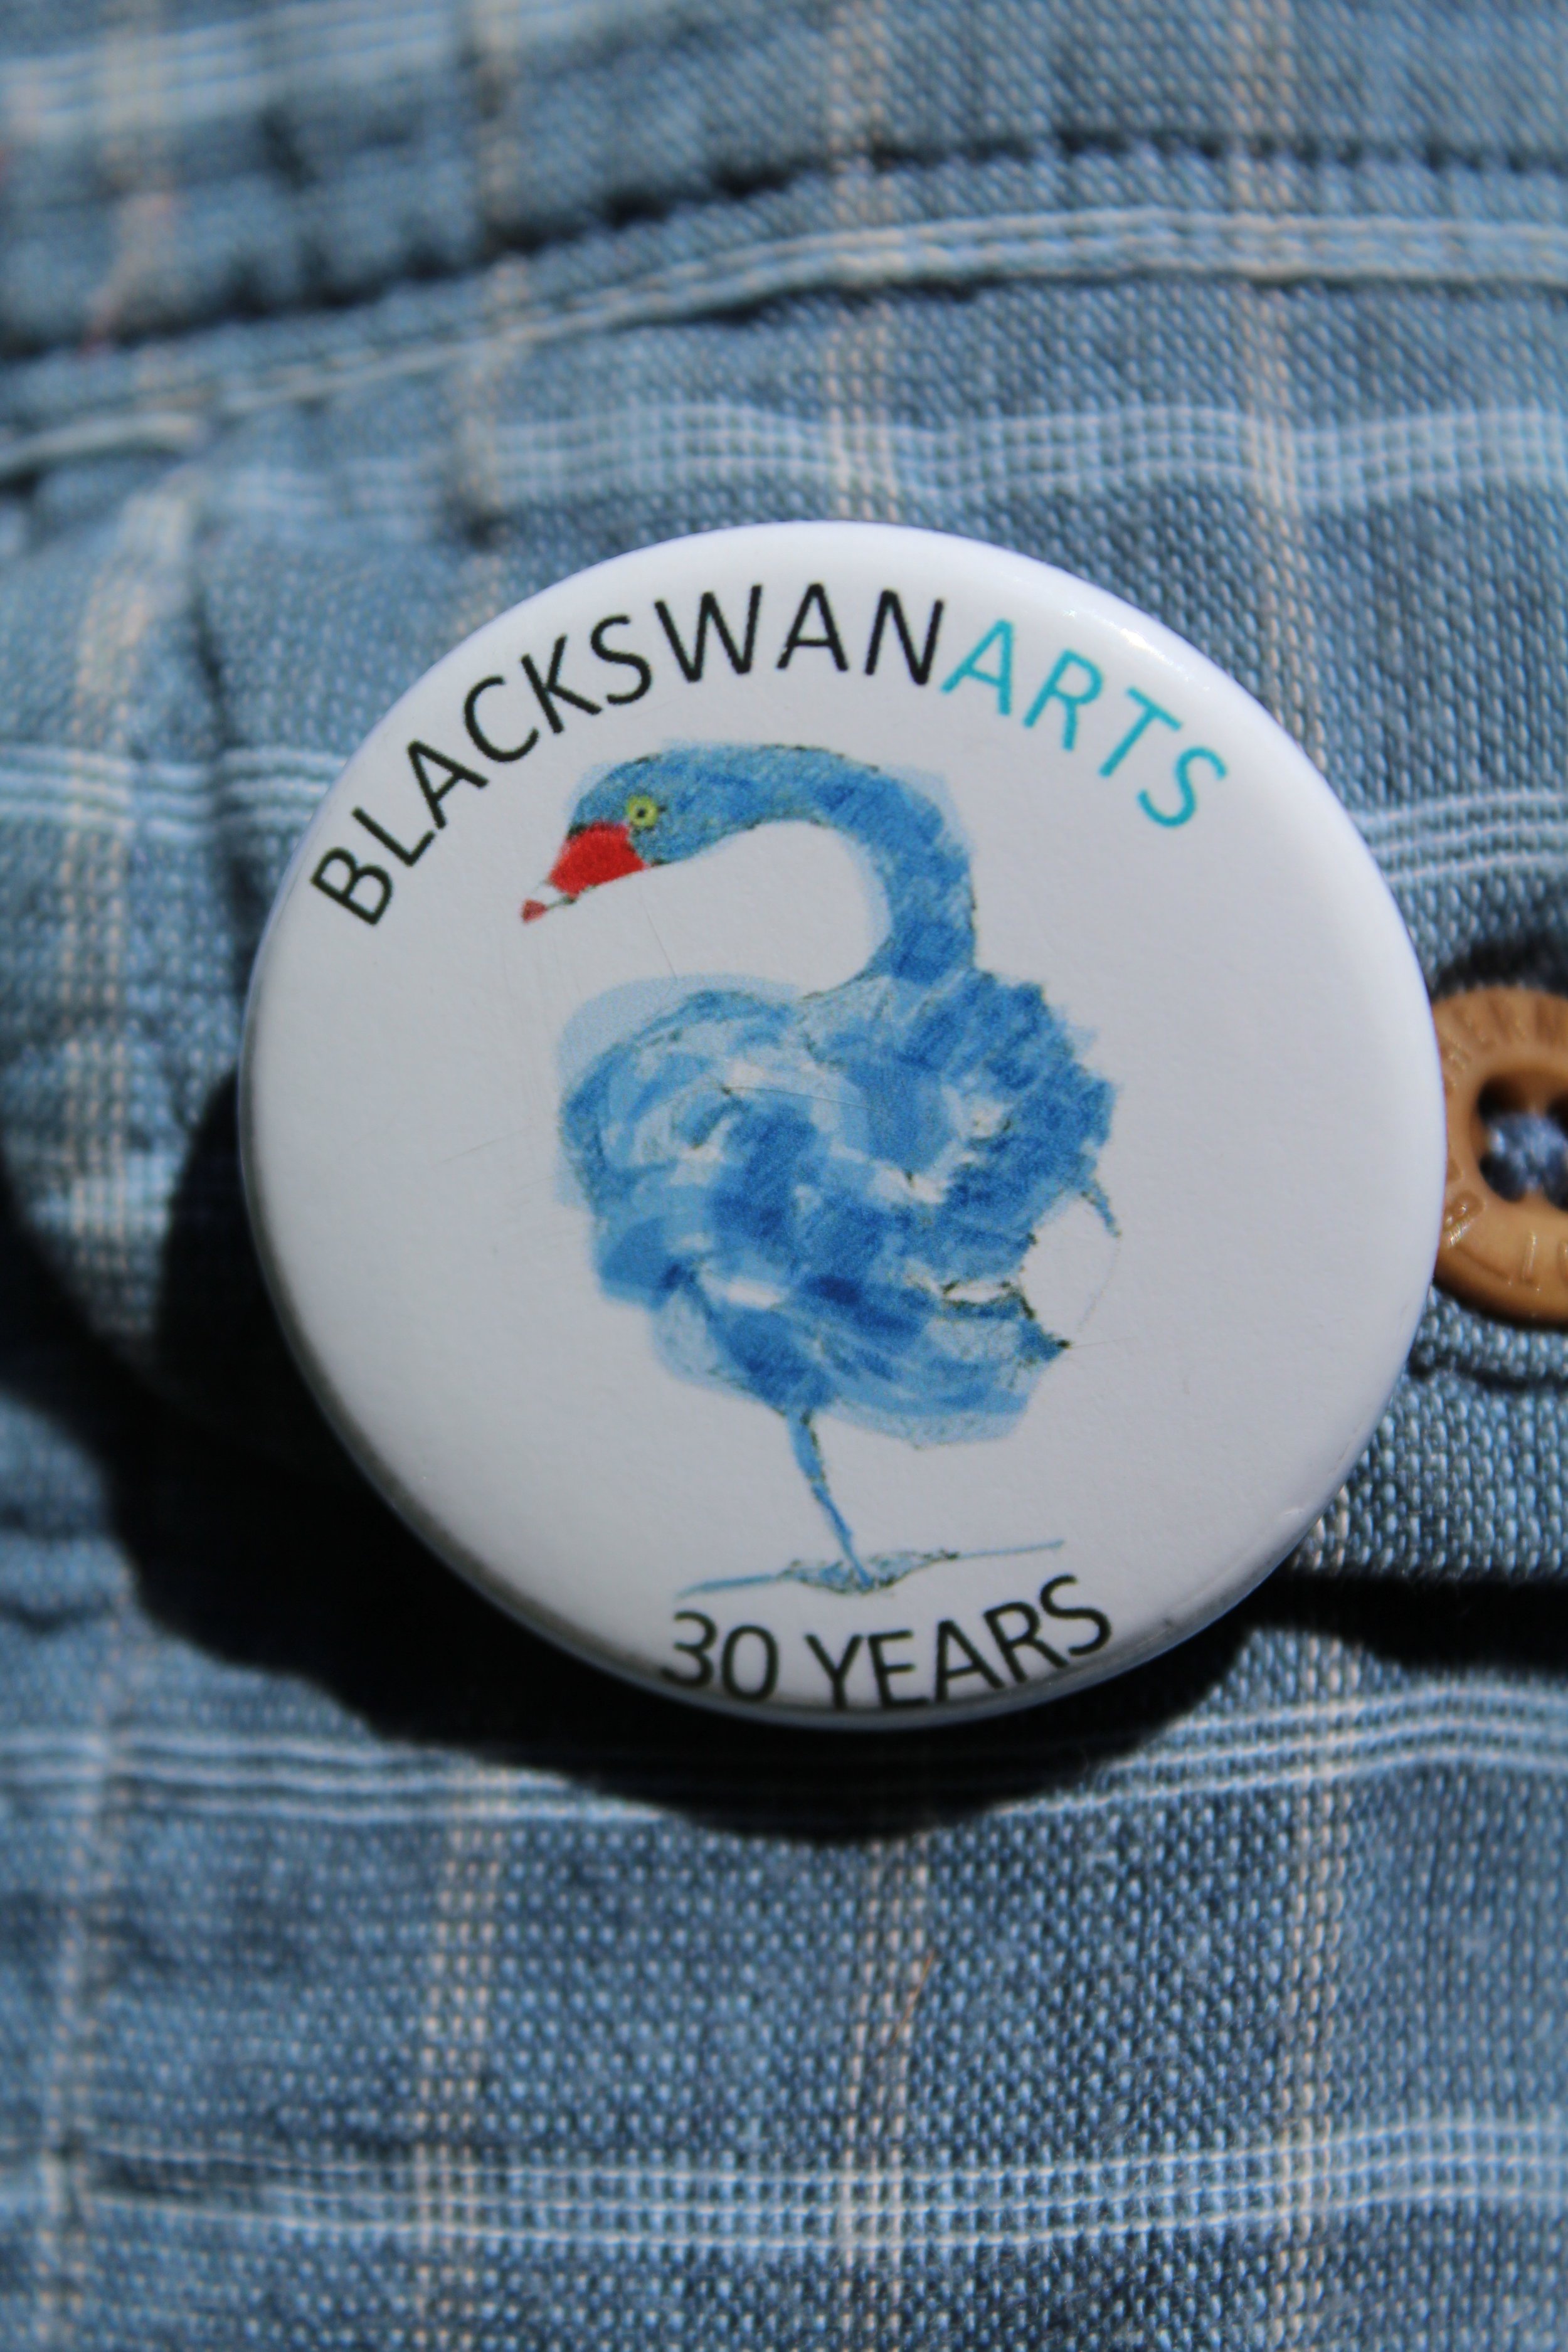 Secret Swans badge (illustration by Belinda Brownlee)